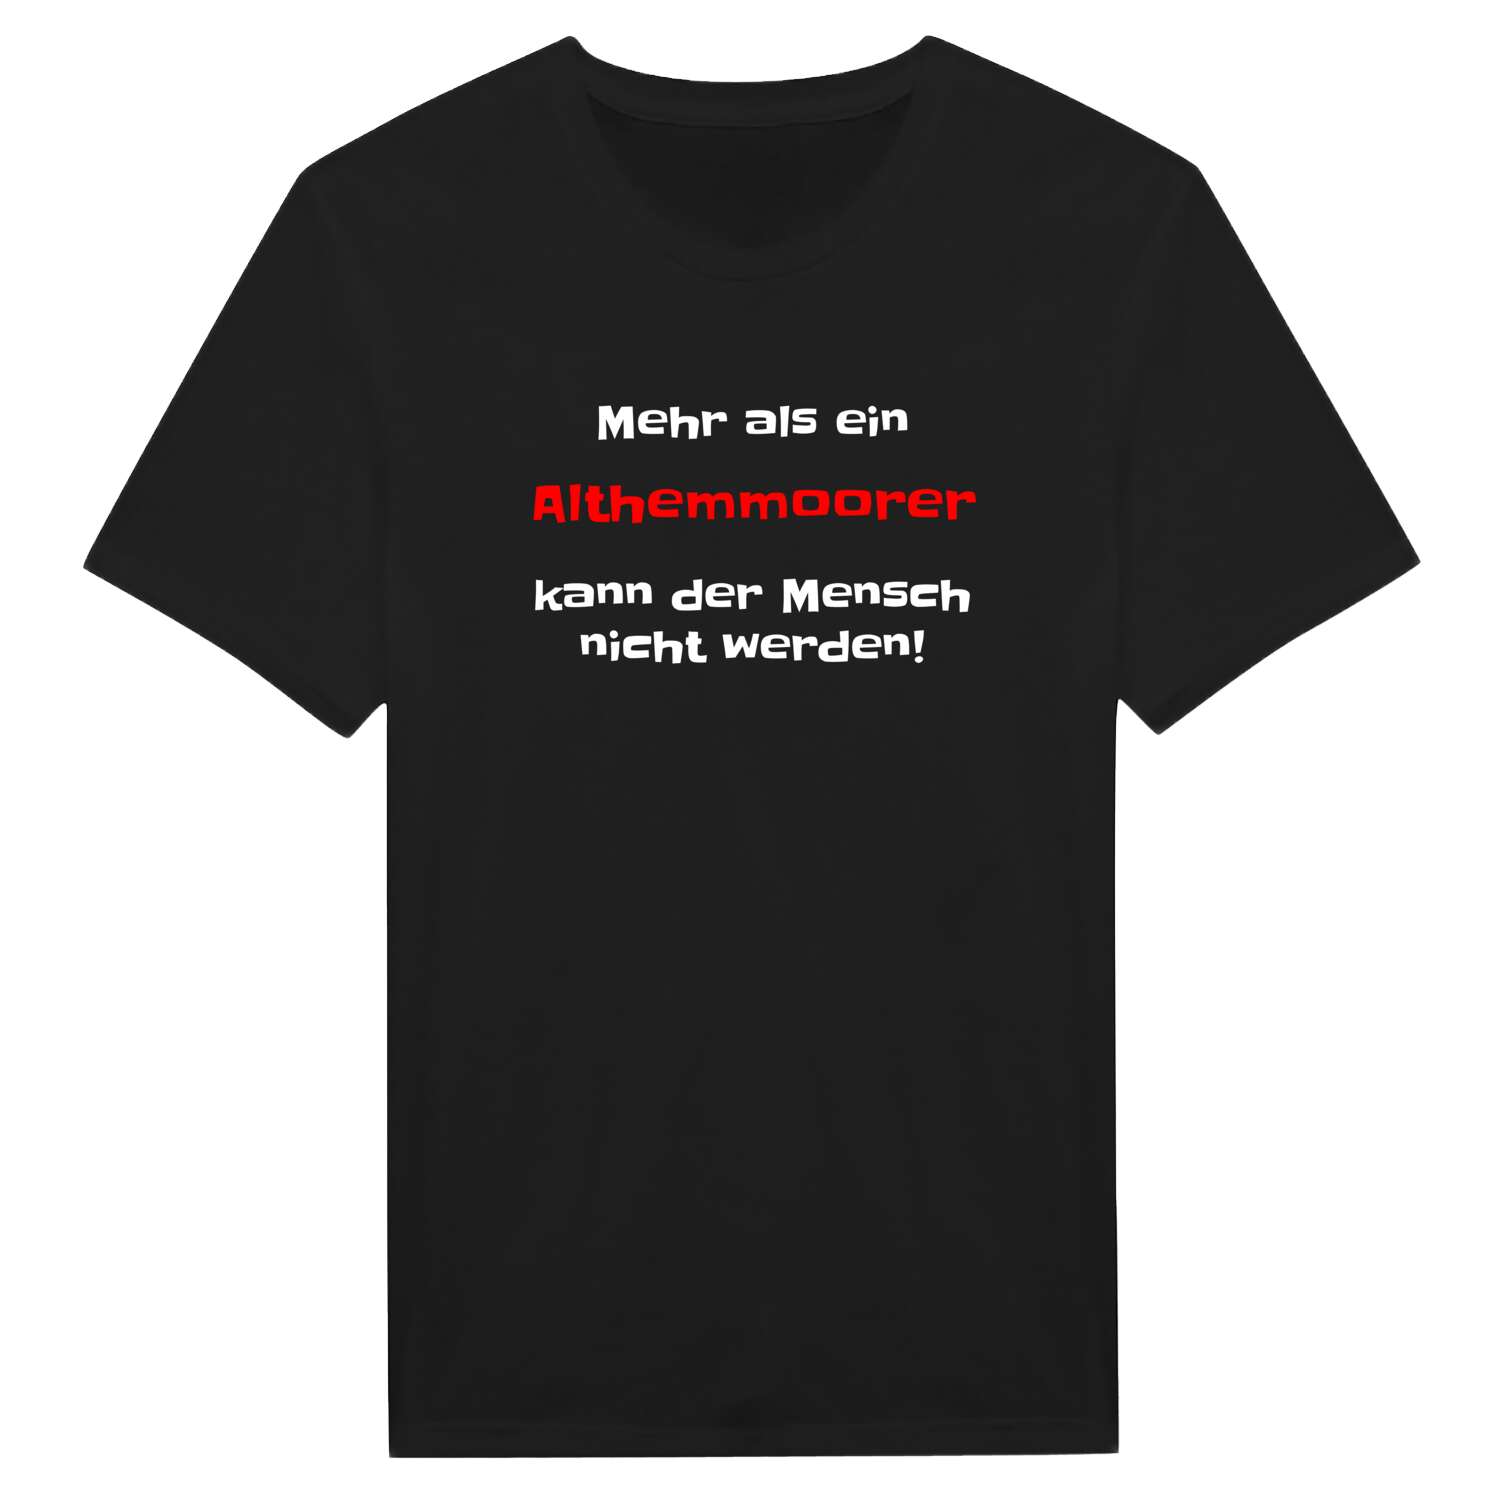 Althemmoor T-Shirt »Mehr als ein«